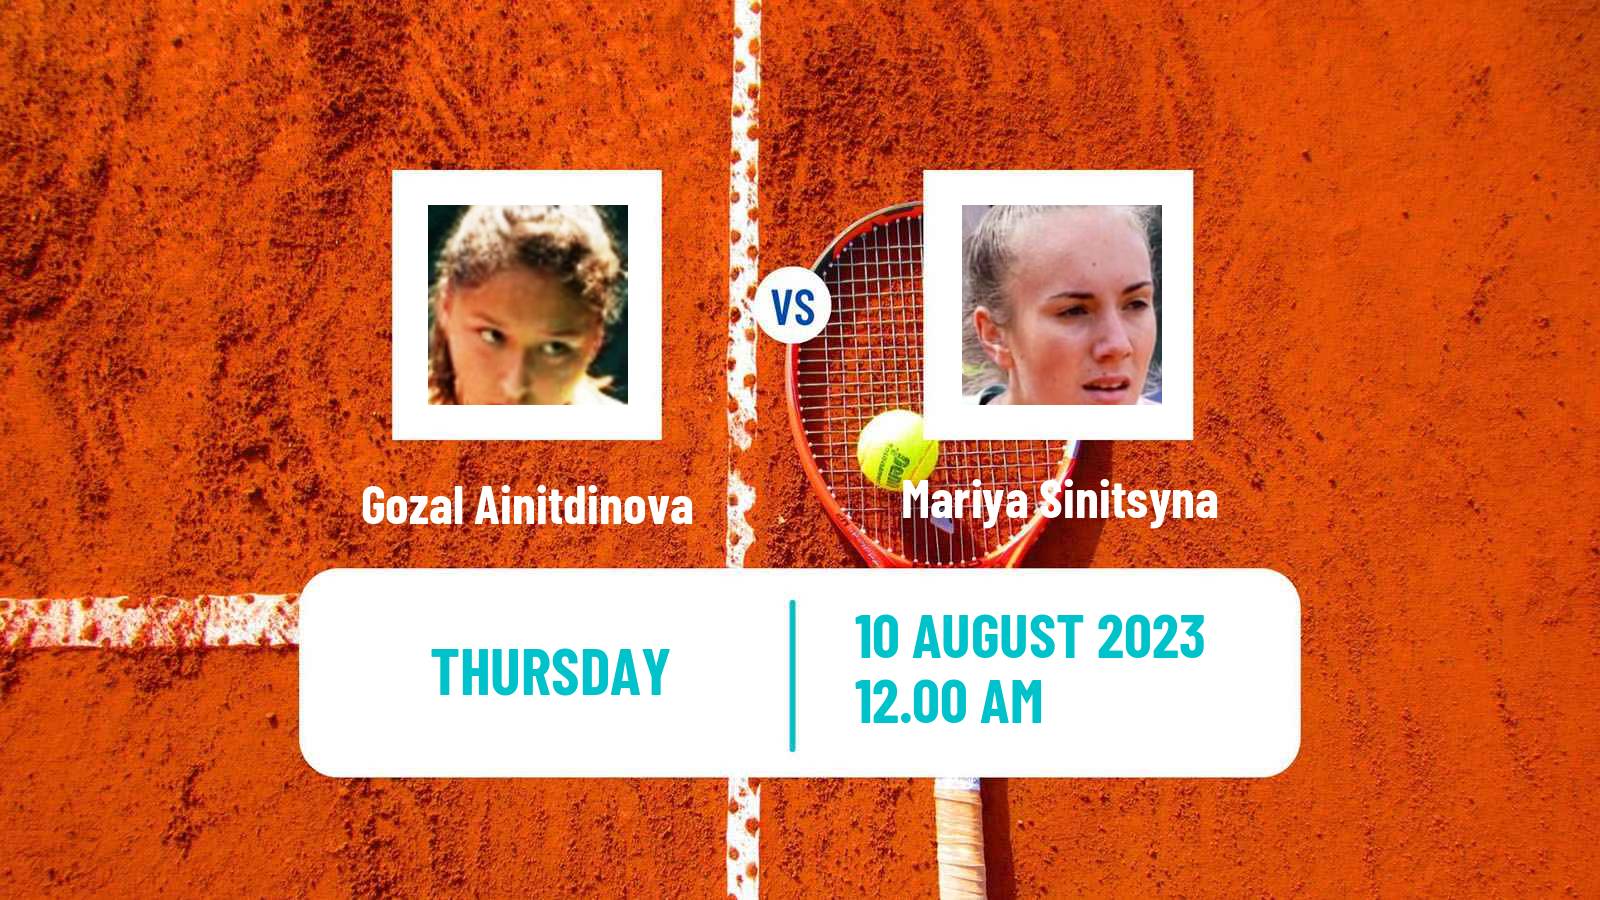 Tennis ITF W15 Ust Kamenogorsk Women Gozal Ainitdinova - Mariya Sinitsyna